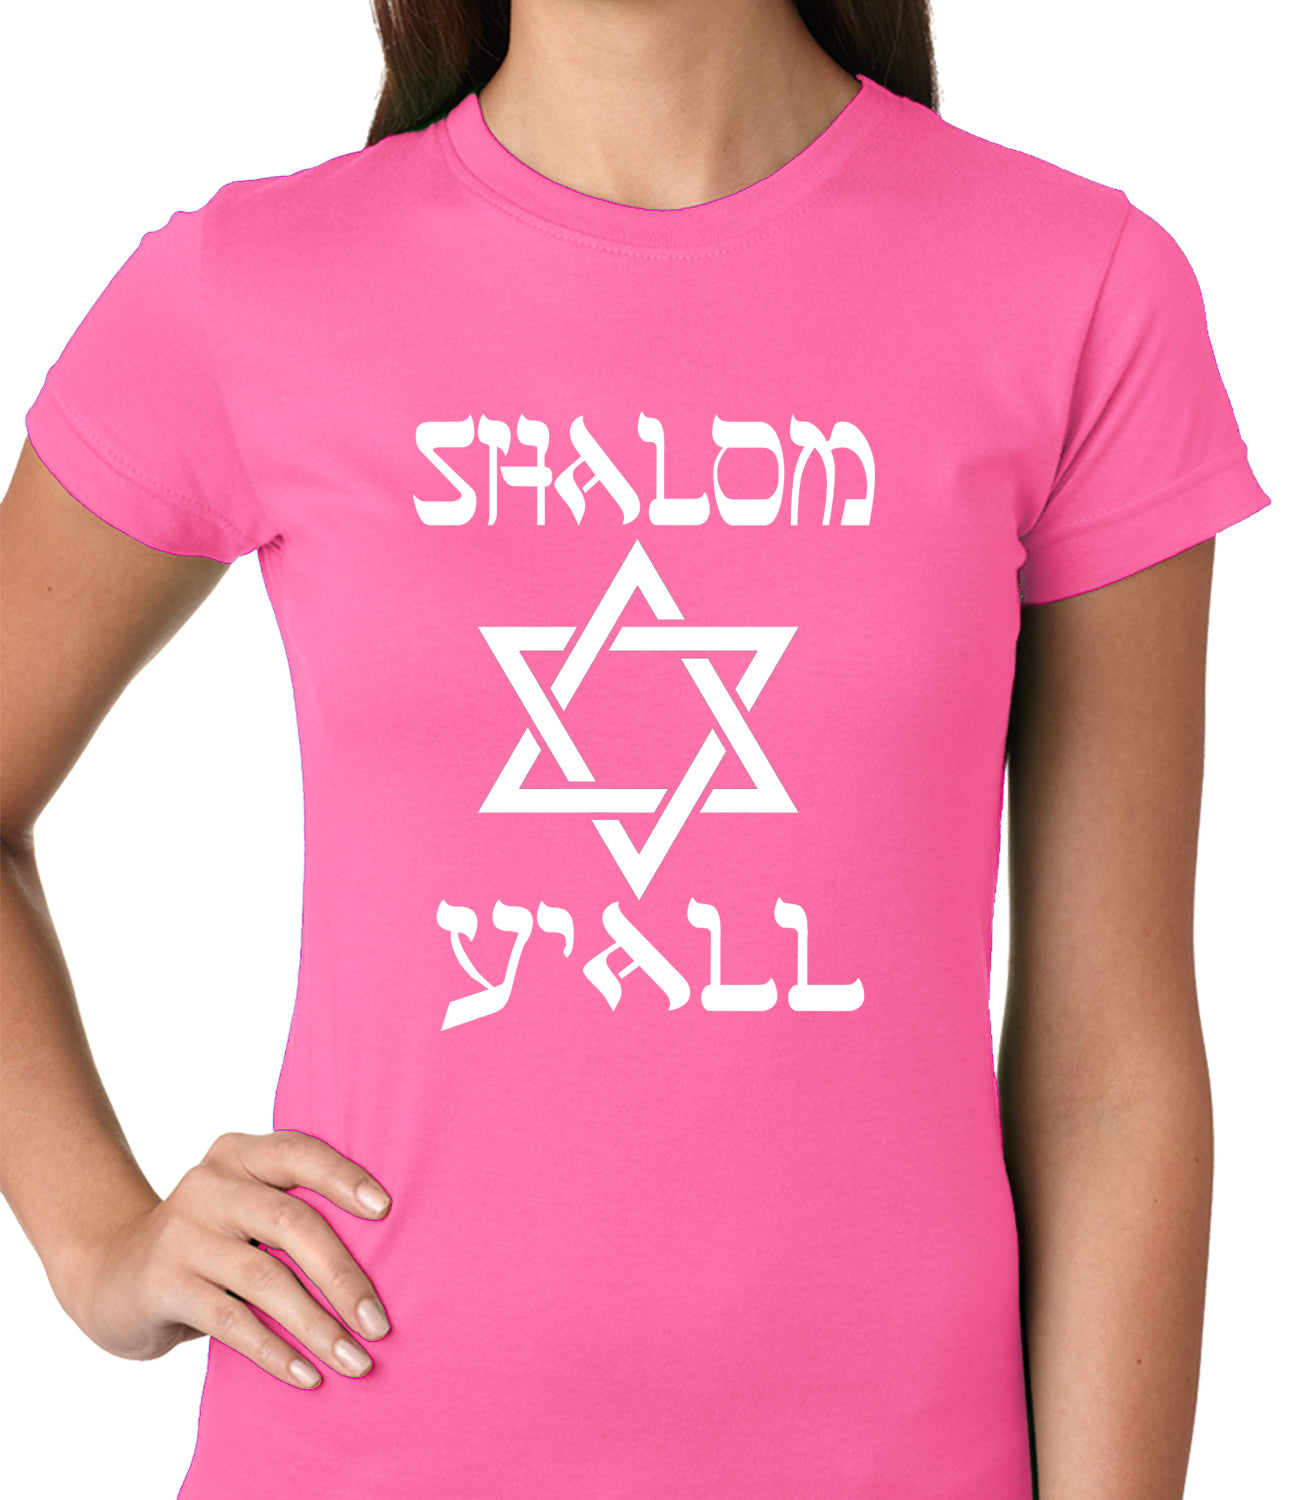 Shalom Y'all Ladies T-shirt